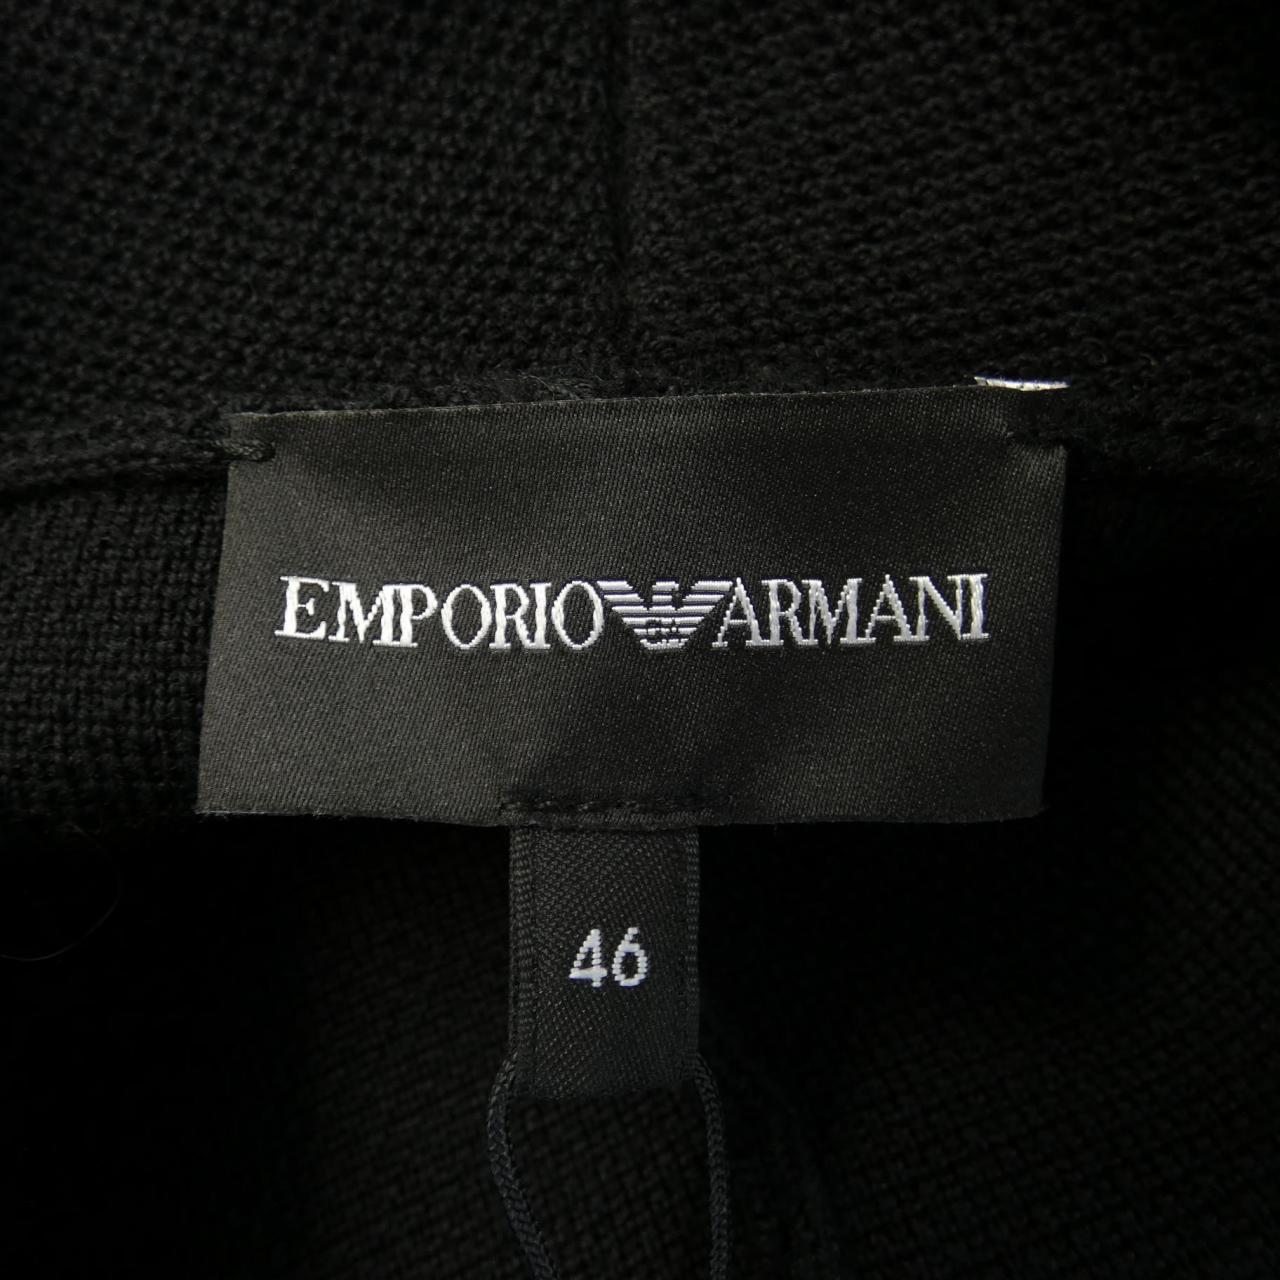 EMPORIO ARMANI EMPORIO ARMANI Jacket